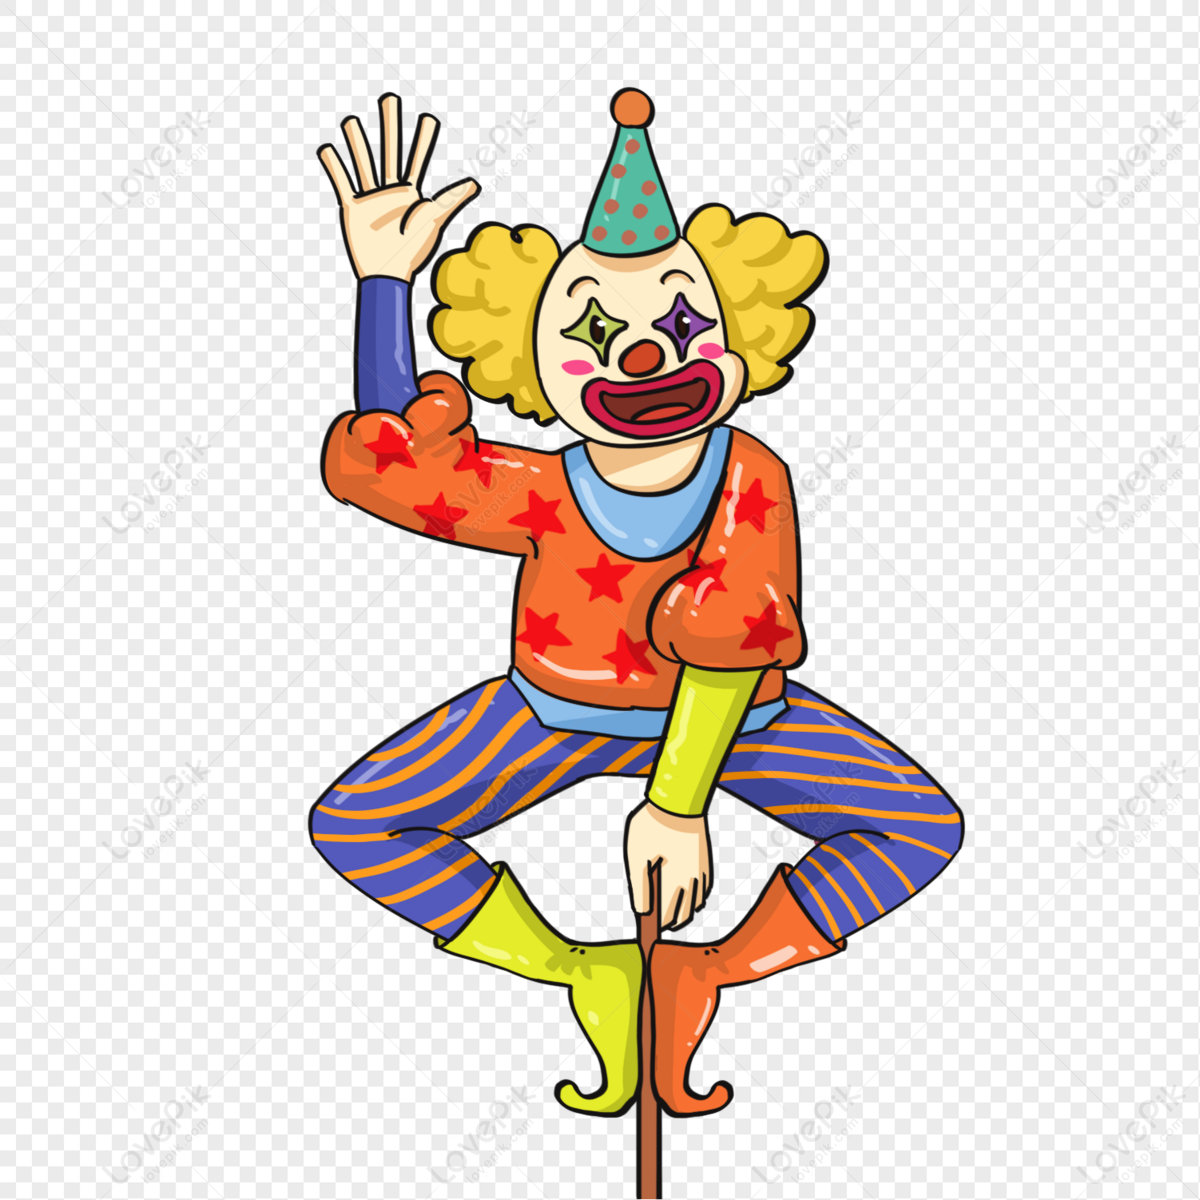 Joker Smile Logo Transparent Background Free Download - PNG Images